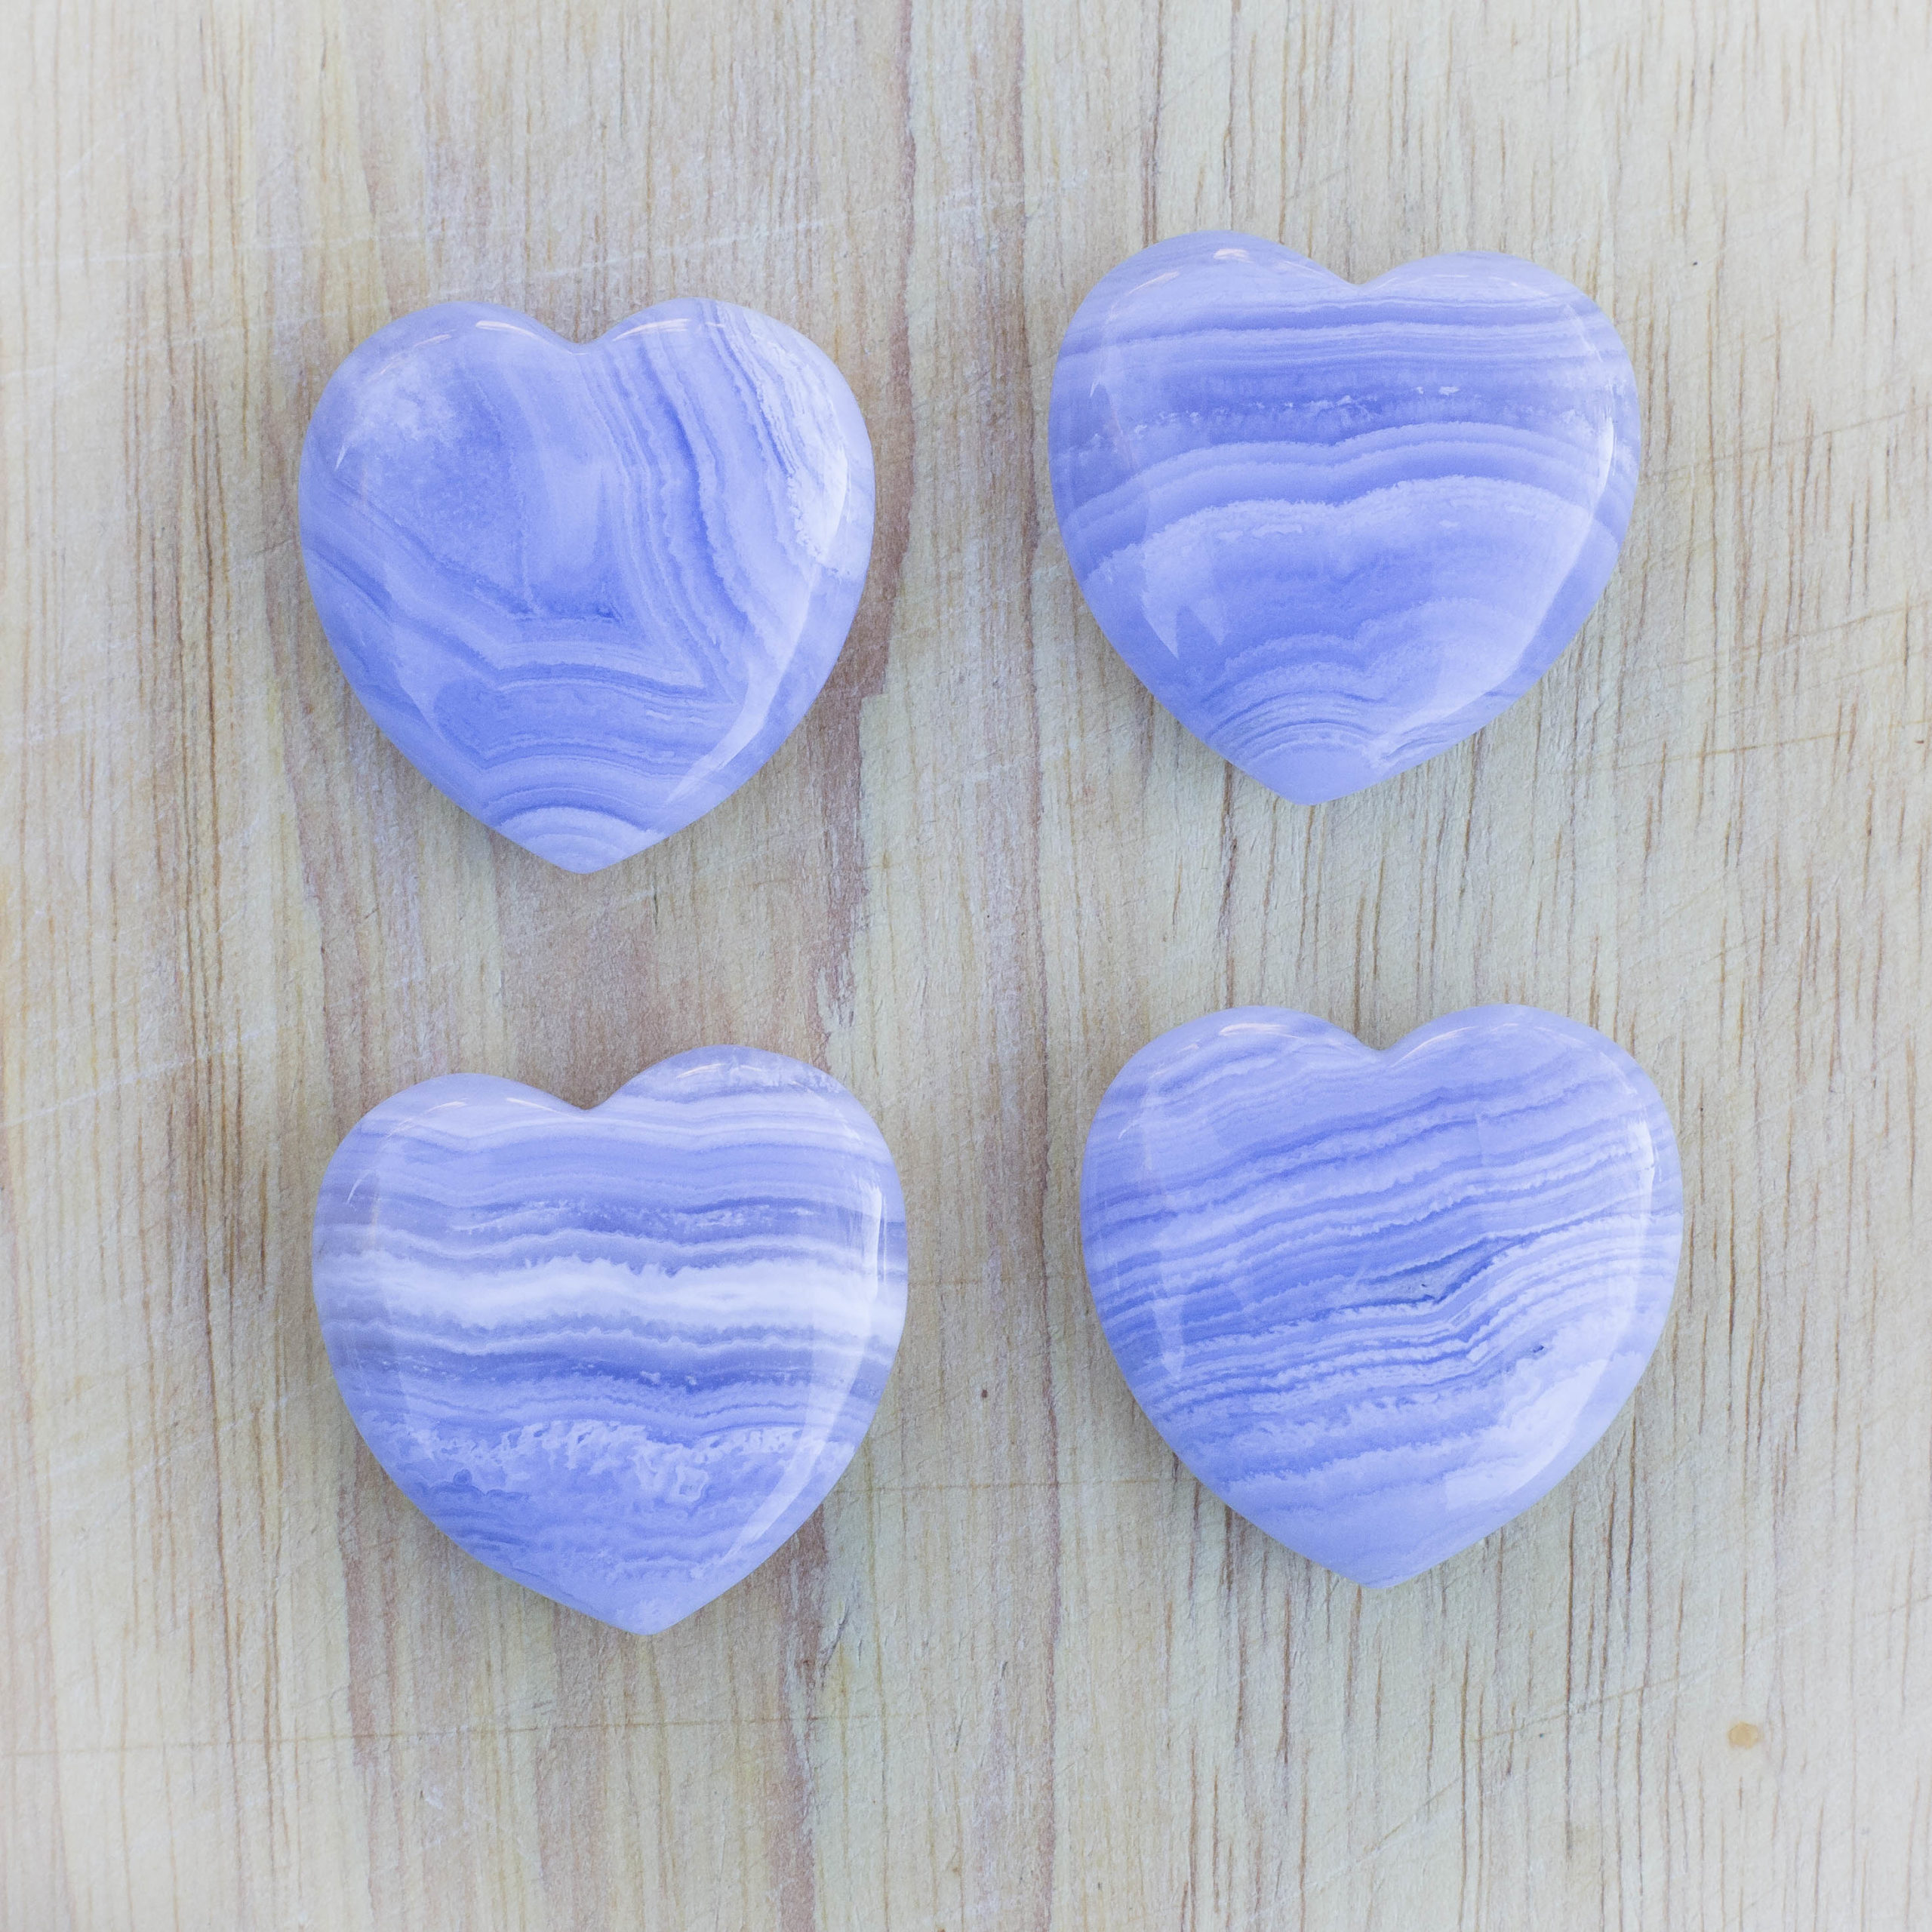 Agate Heart Heart Shaped Agate Agate Puffy Heart Blue Lace Agate Blue Lace Agate Heart cabochon